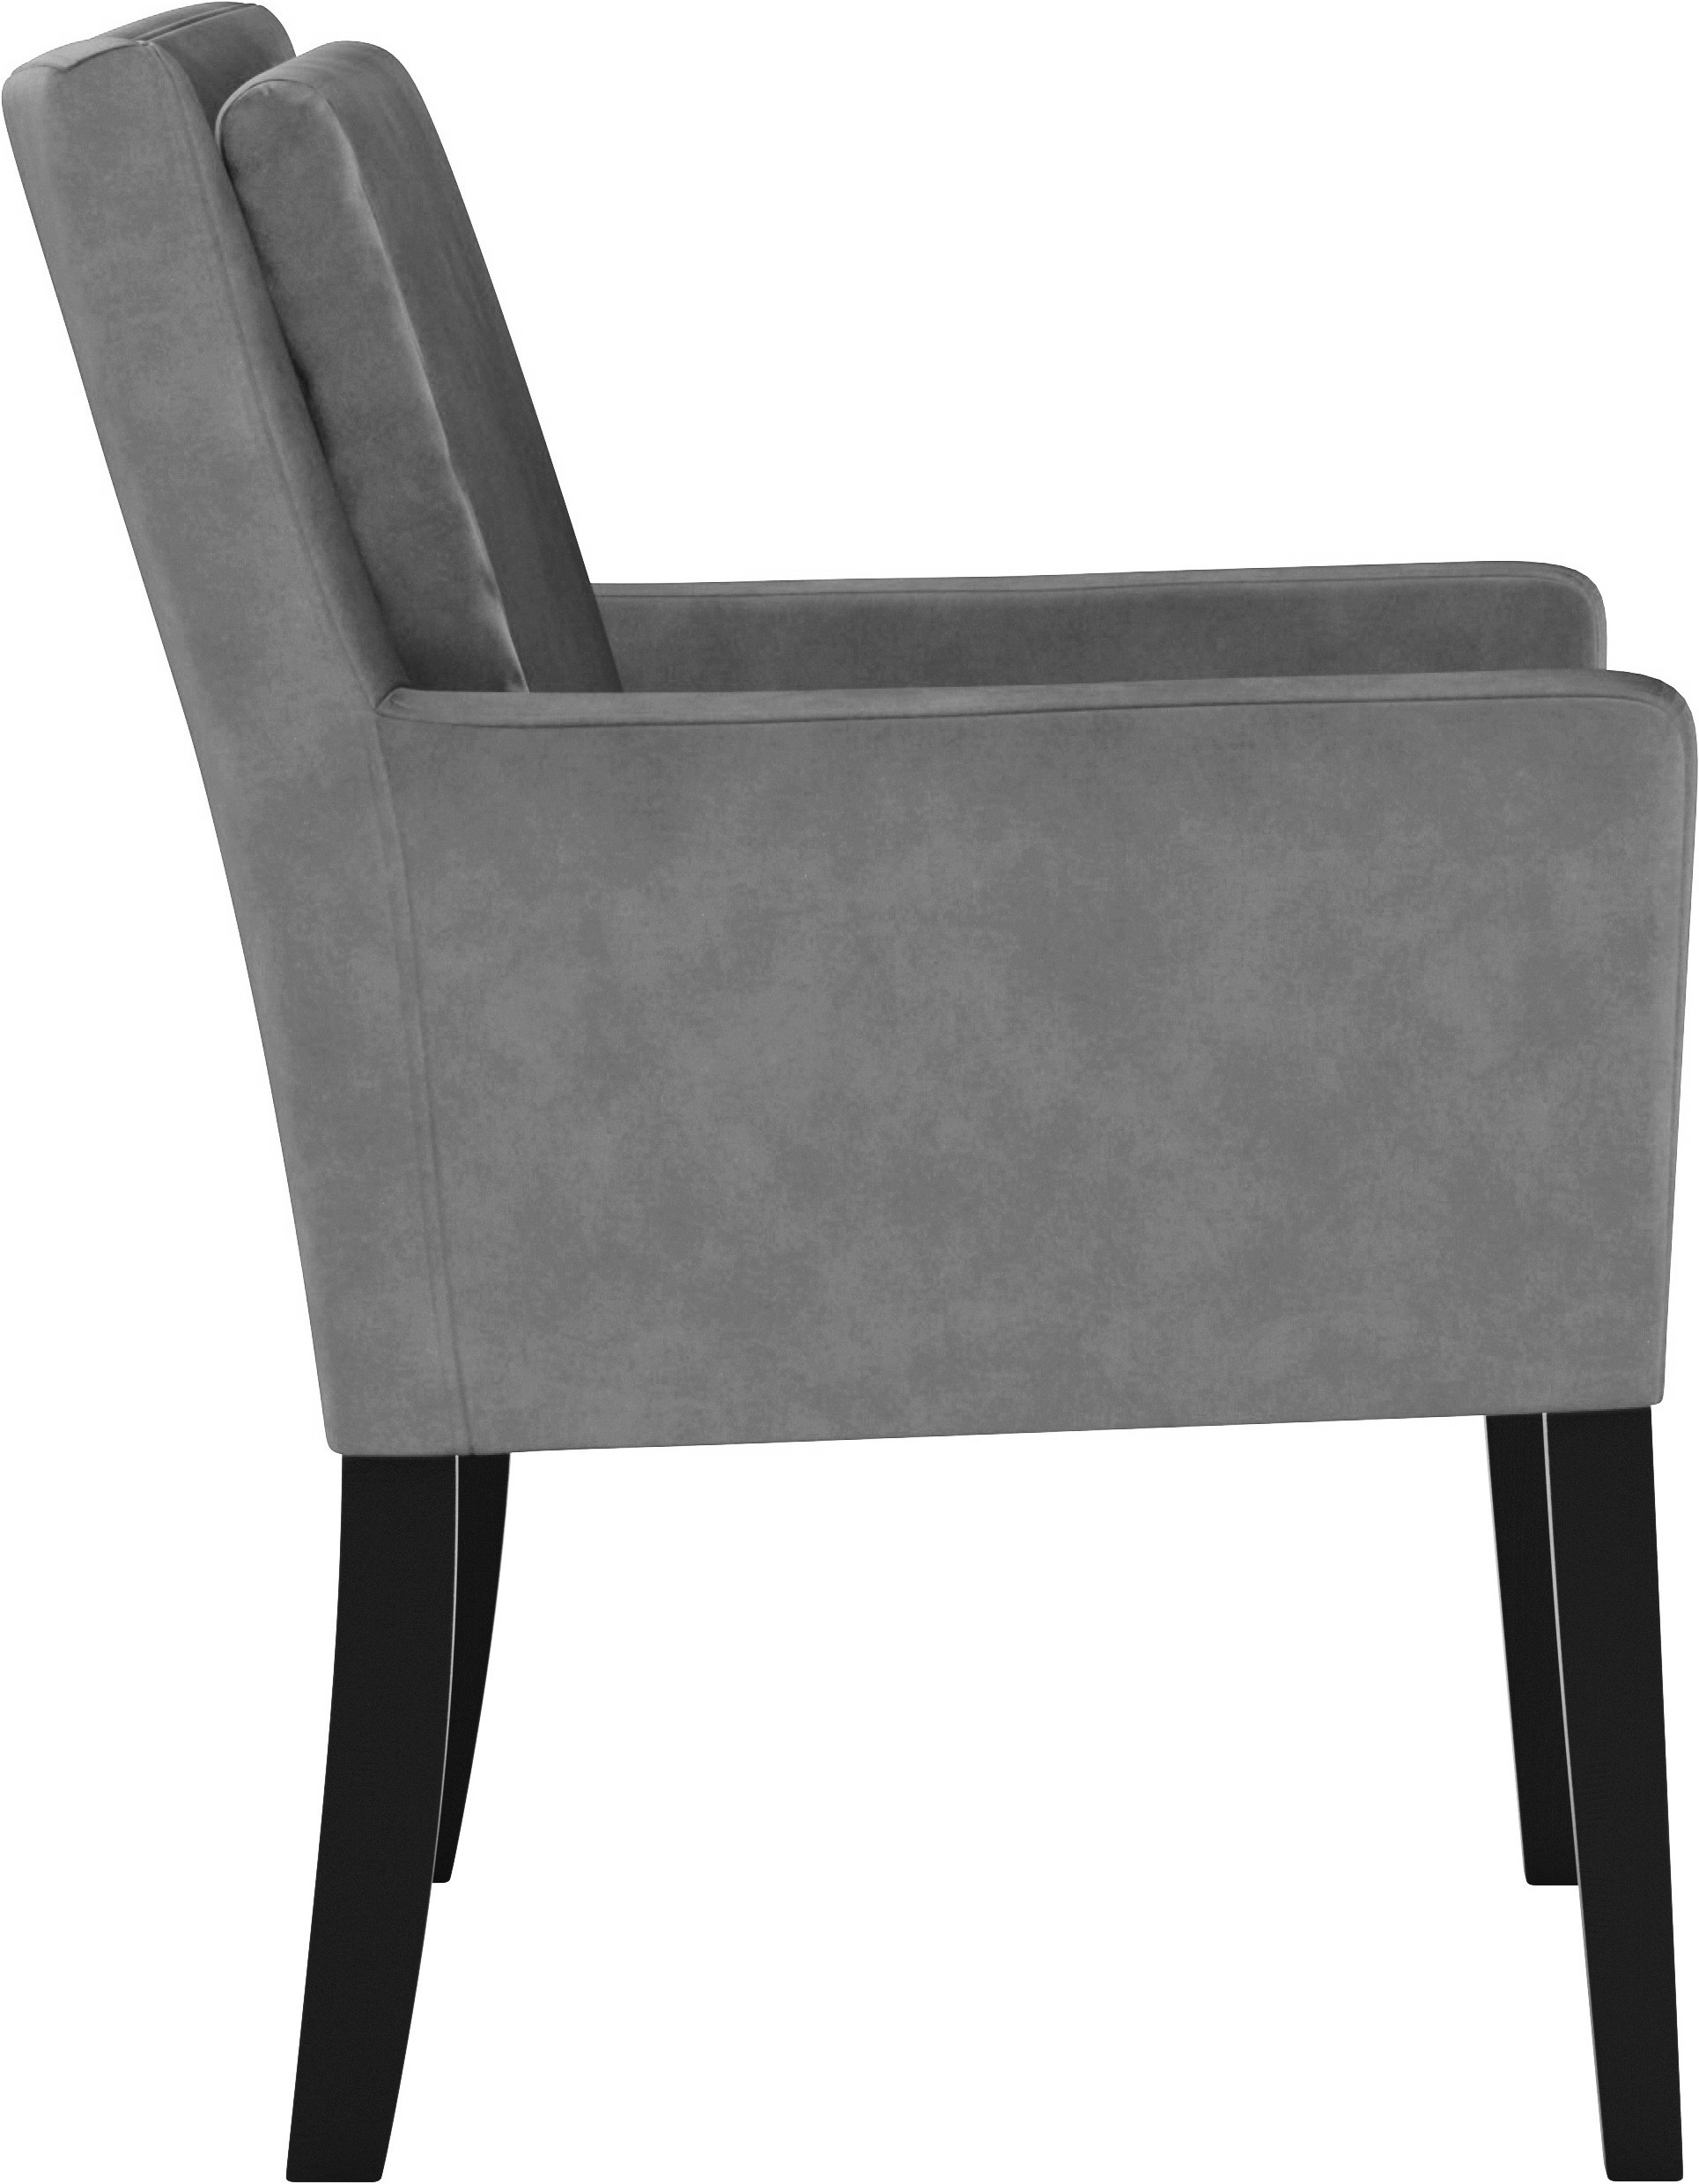 Home affaire Armlehnstuhl »Elona«, Polyester, Sitz und Rücken gepolstert, Stuhlbeine aus Massivholz, Sitzhöhe 50 cm